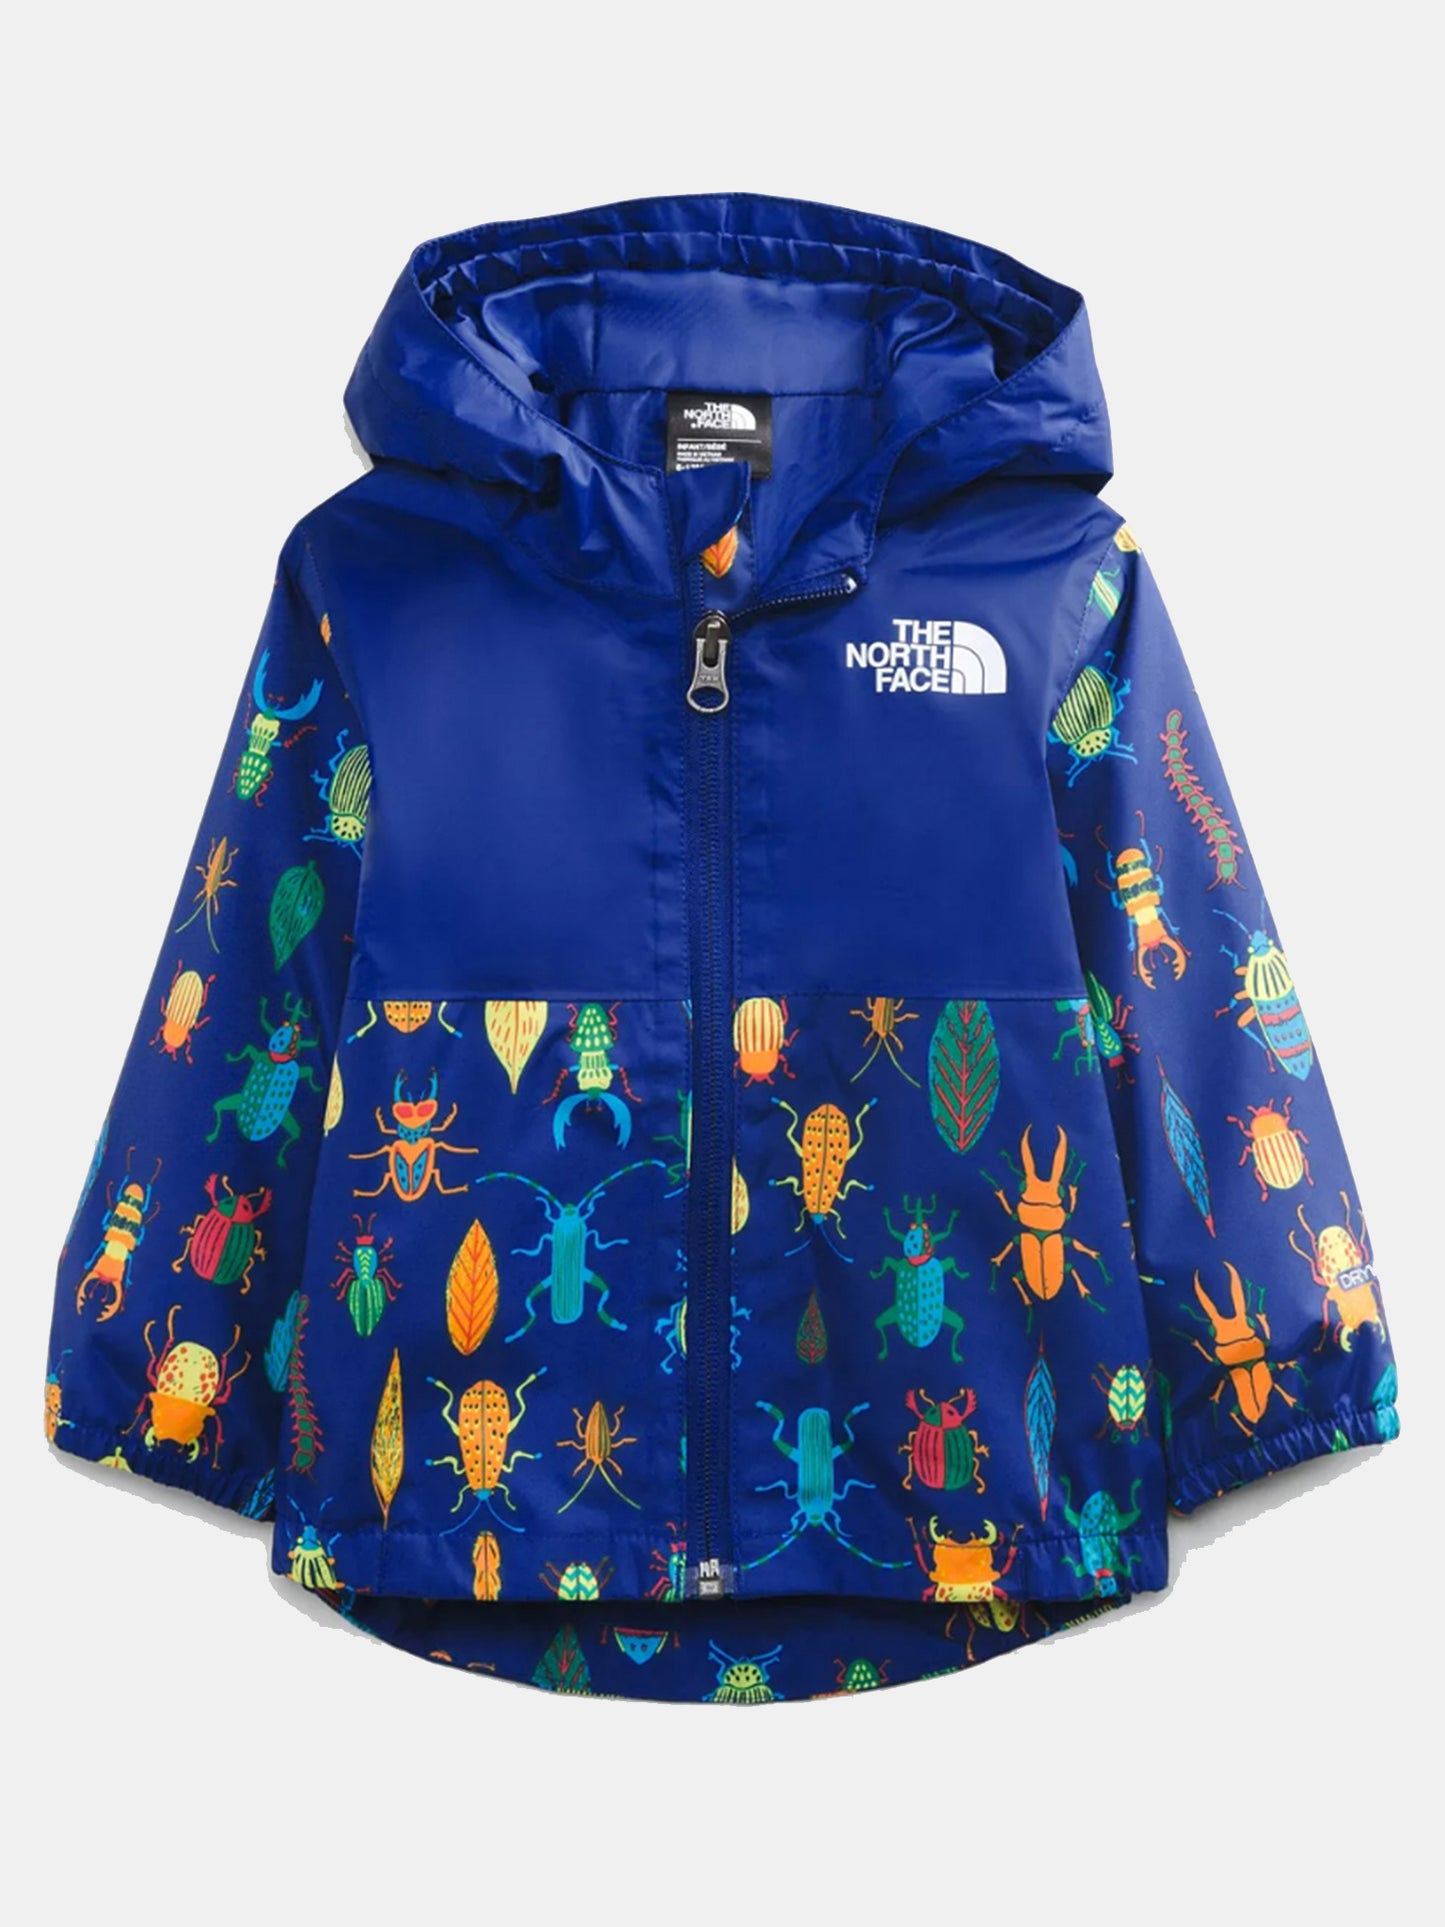 The North Face Little Kids' Zipline Rain Jacket